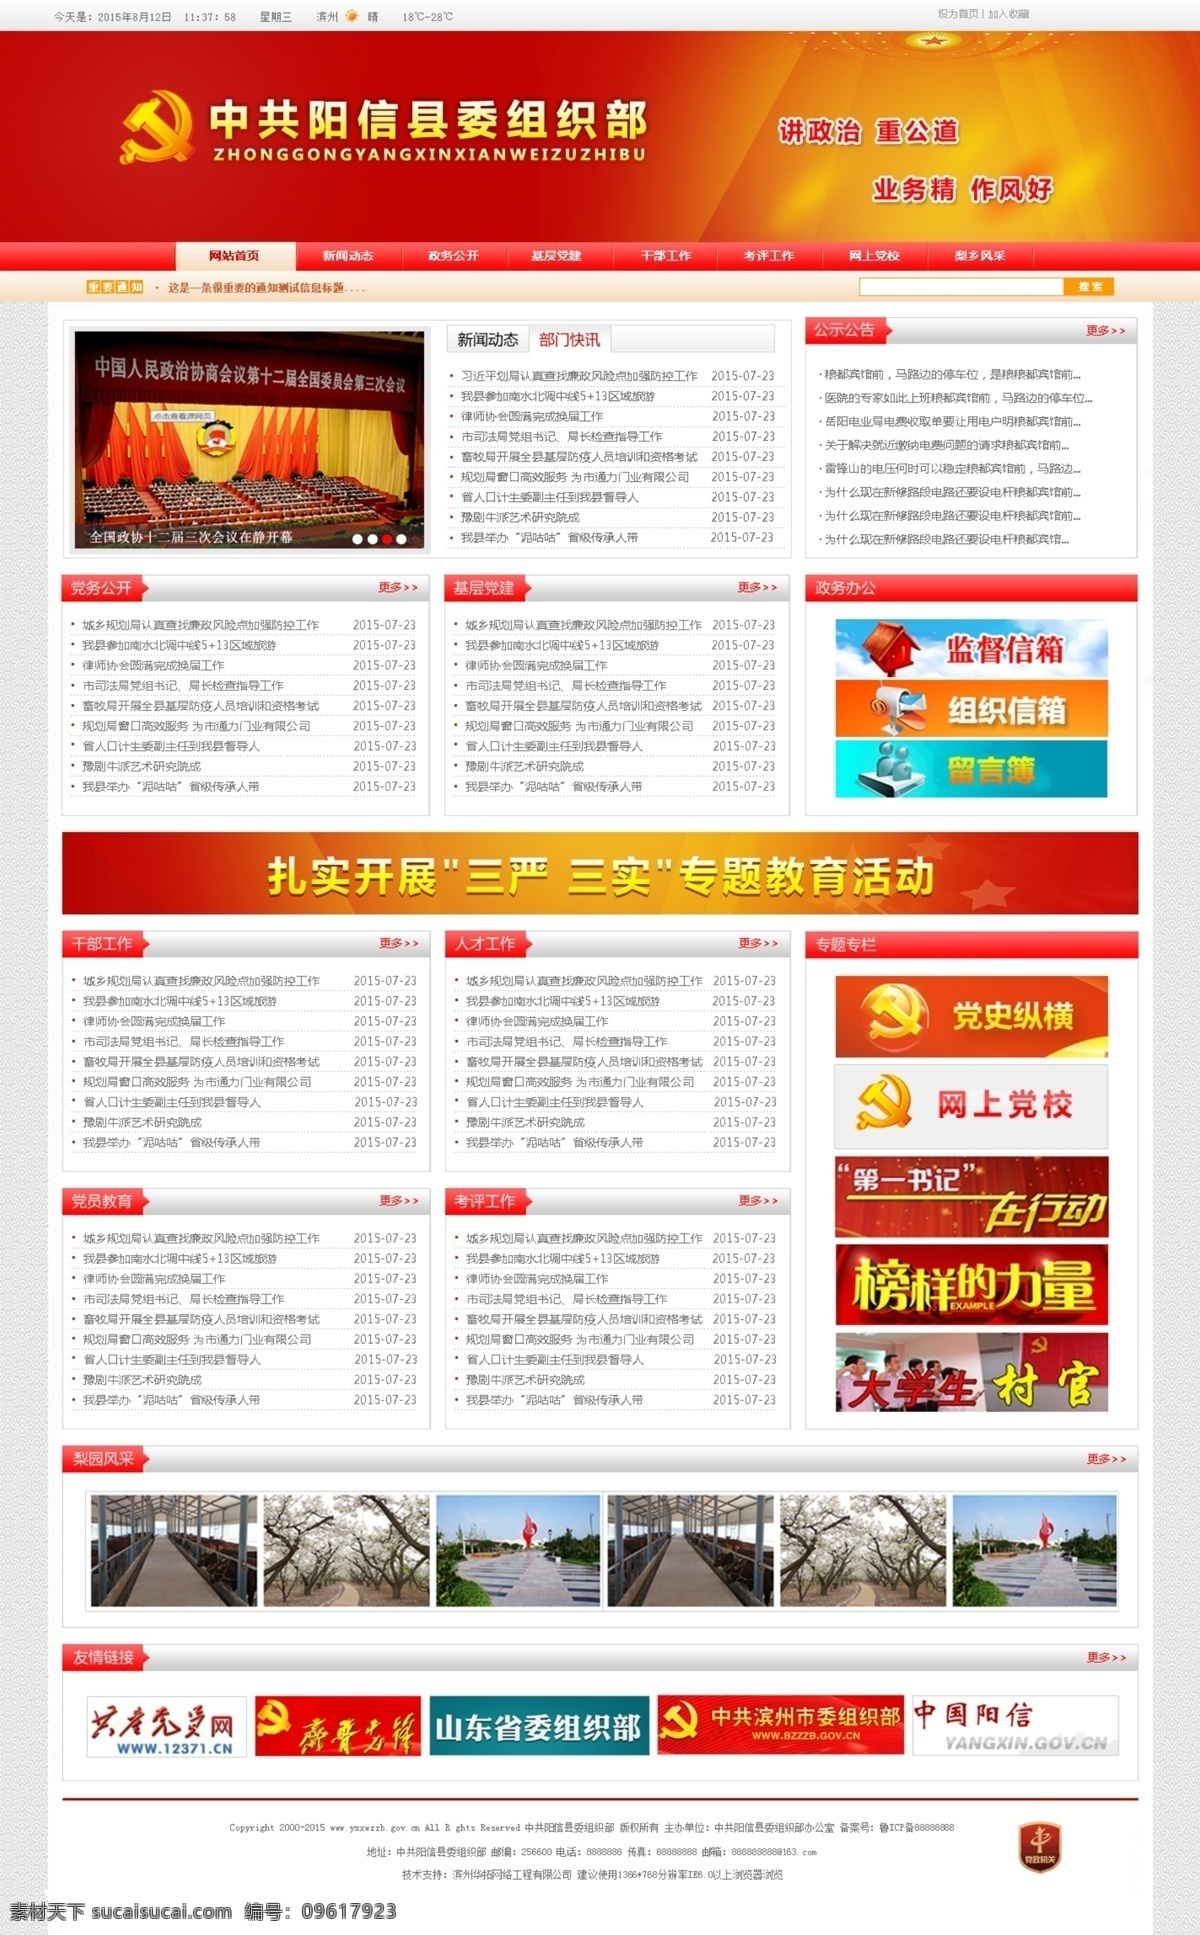 政府网站 党建网站 党网站 专题 网站模板 网站模版 web 界面设计 中文模板